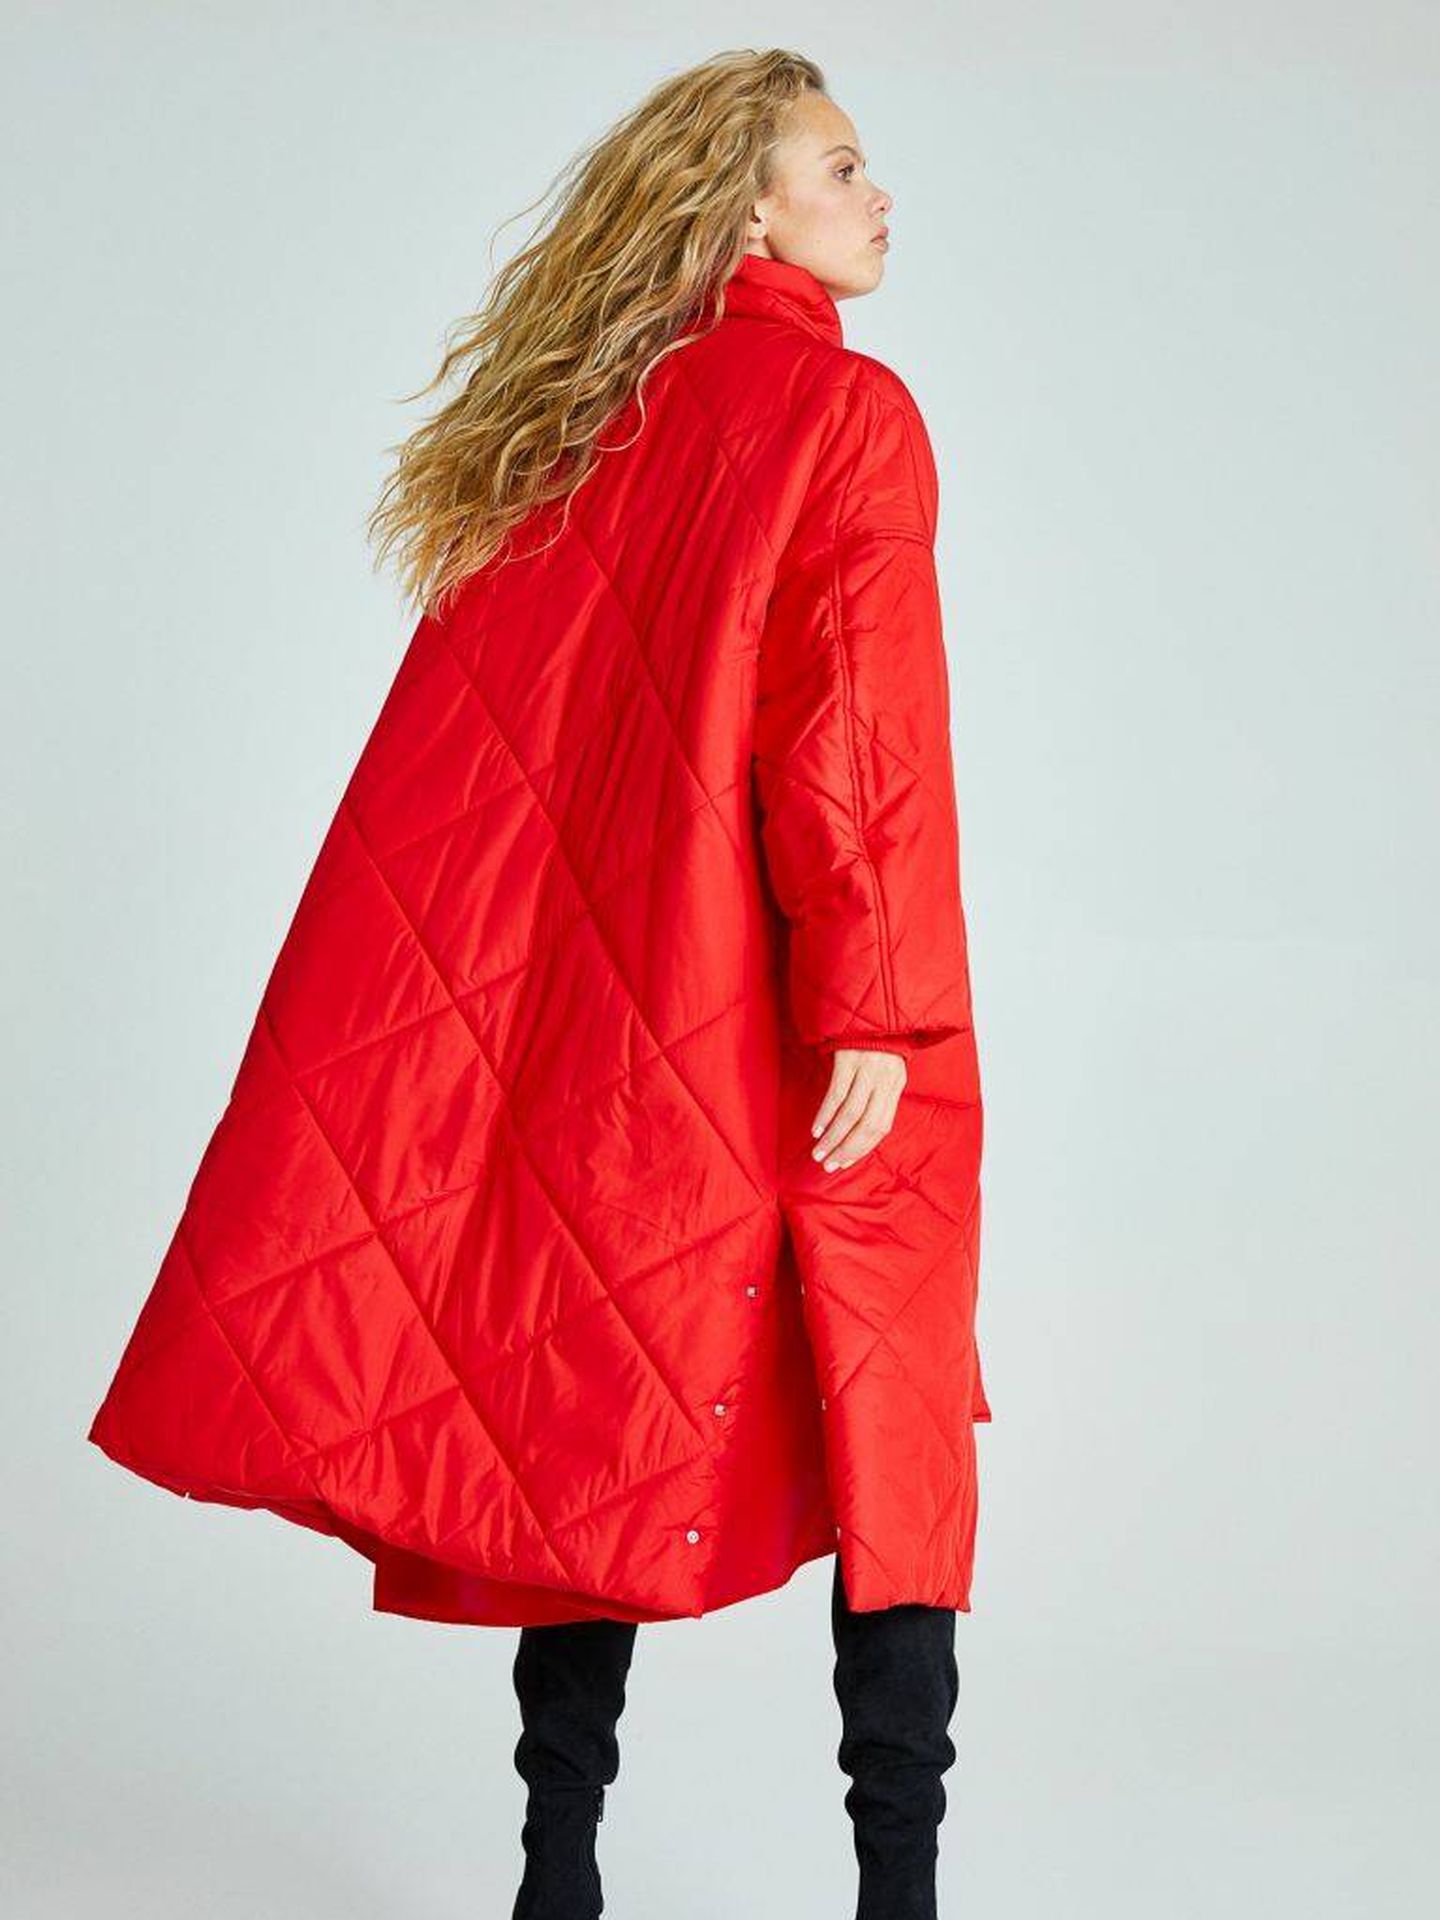 H&M Abrigo de entretiempo rojo estilo cl\u00e1sico Moda Abrigos Abrigos de entretiempo 